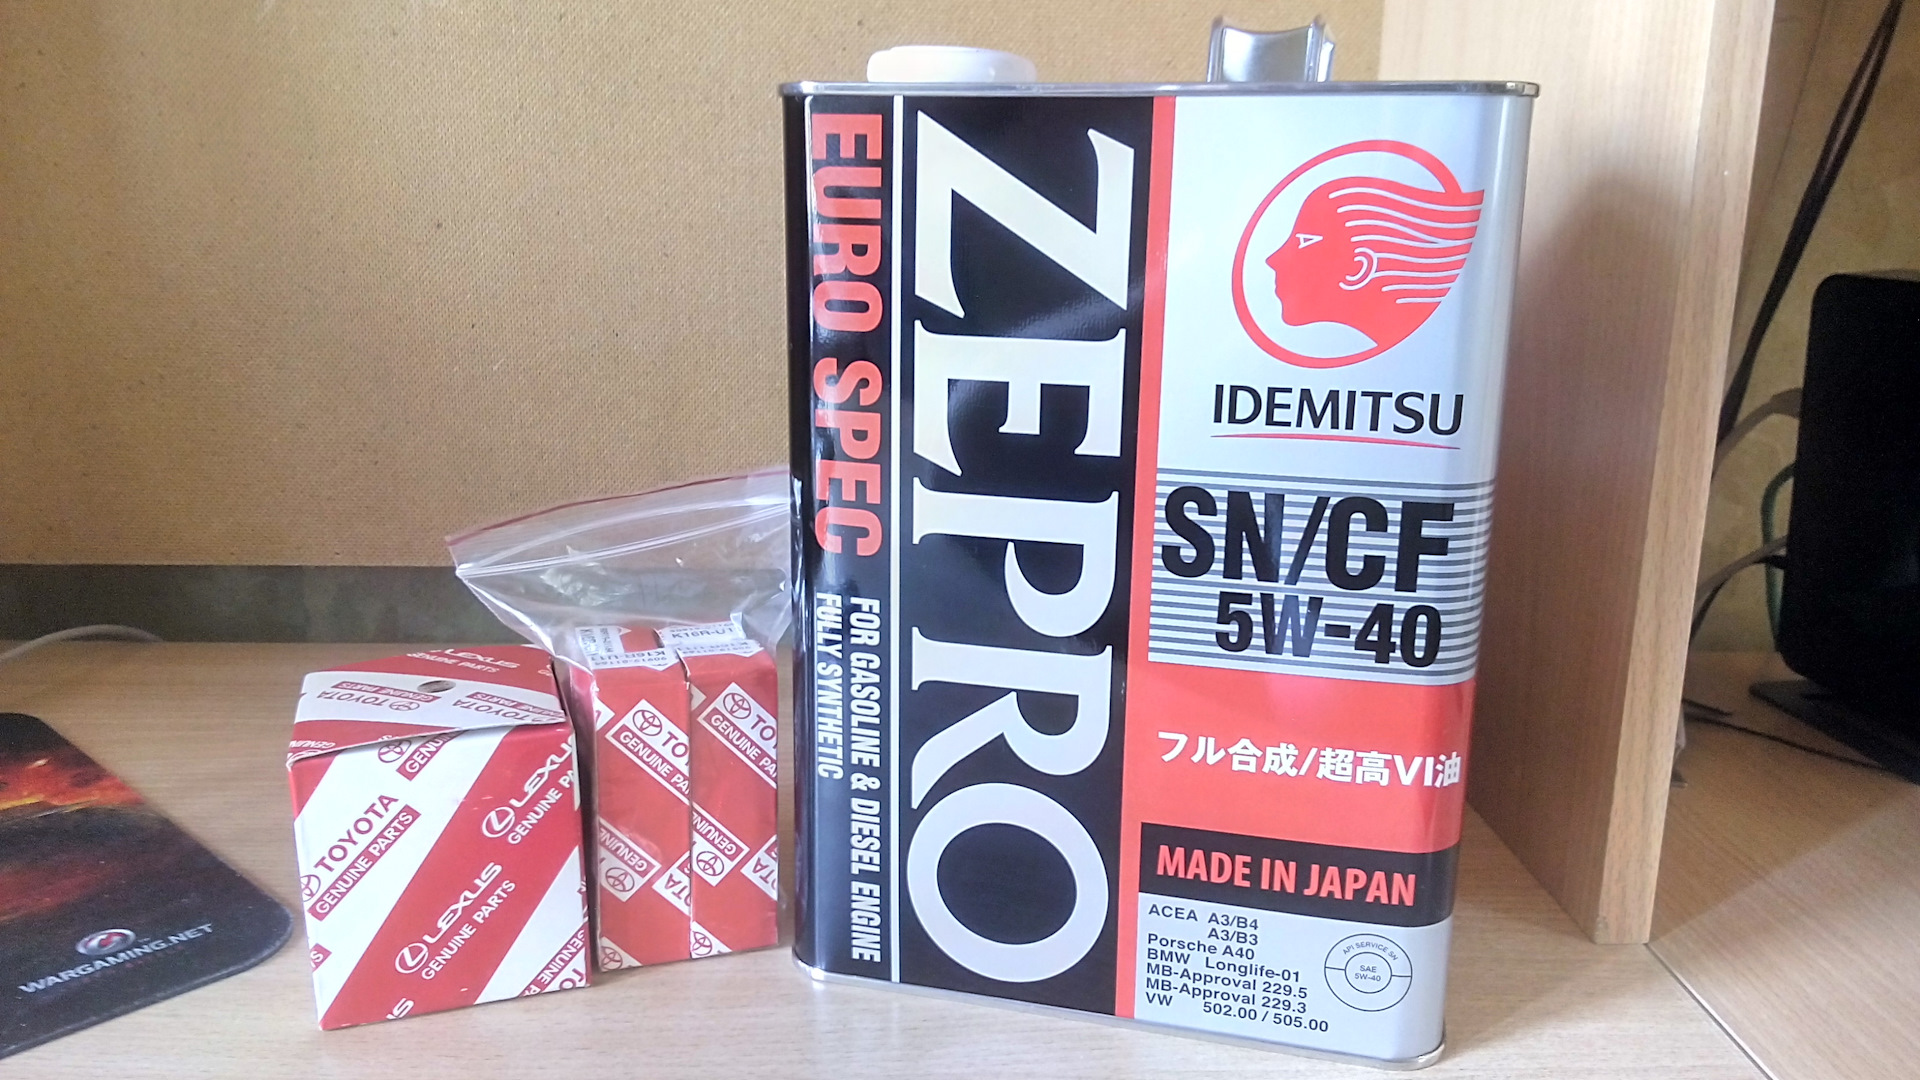 Zepro 5w30 купить. Идемитсу зепро 5в40. Idemitsu Zepro 5w30. Idemitsu Zepro Touring 5w-30. Zepro Racing 5w-30.